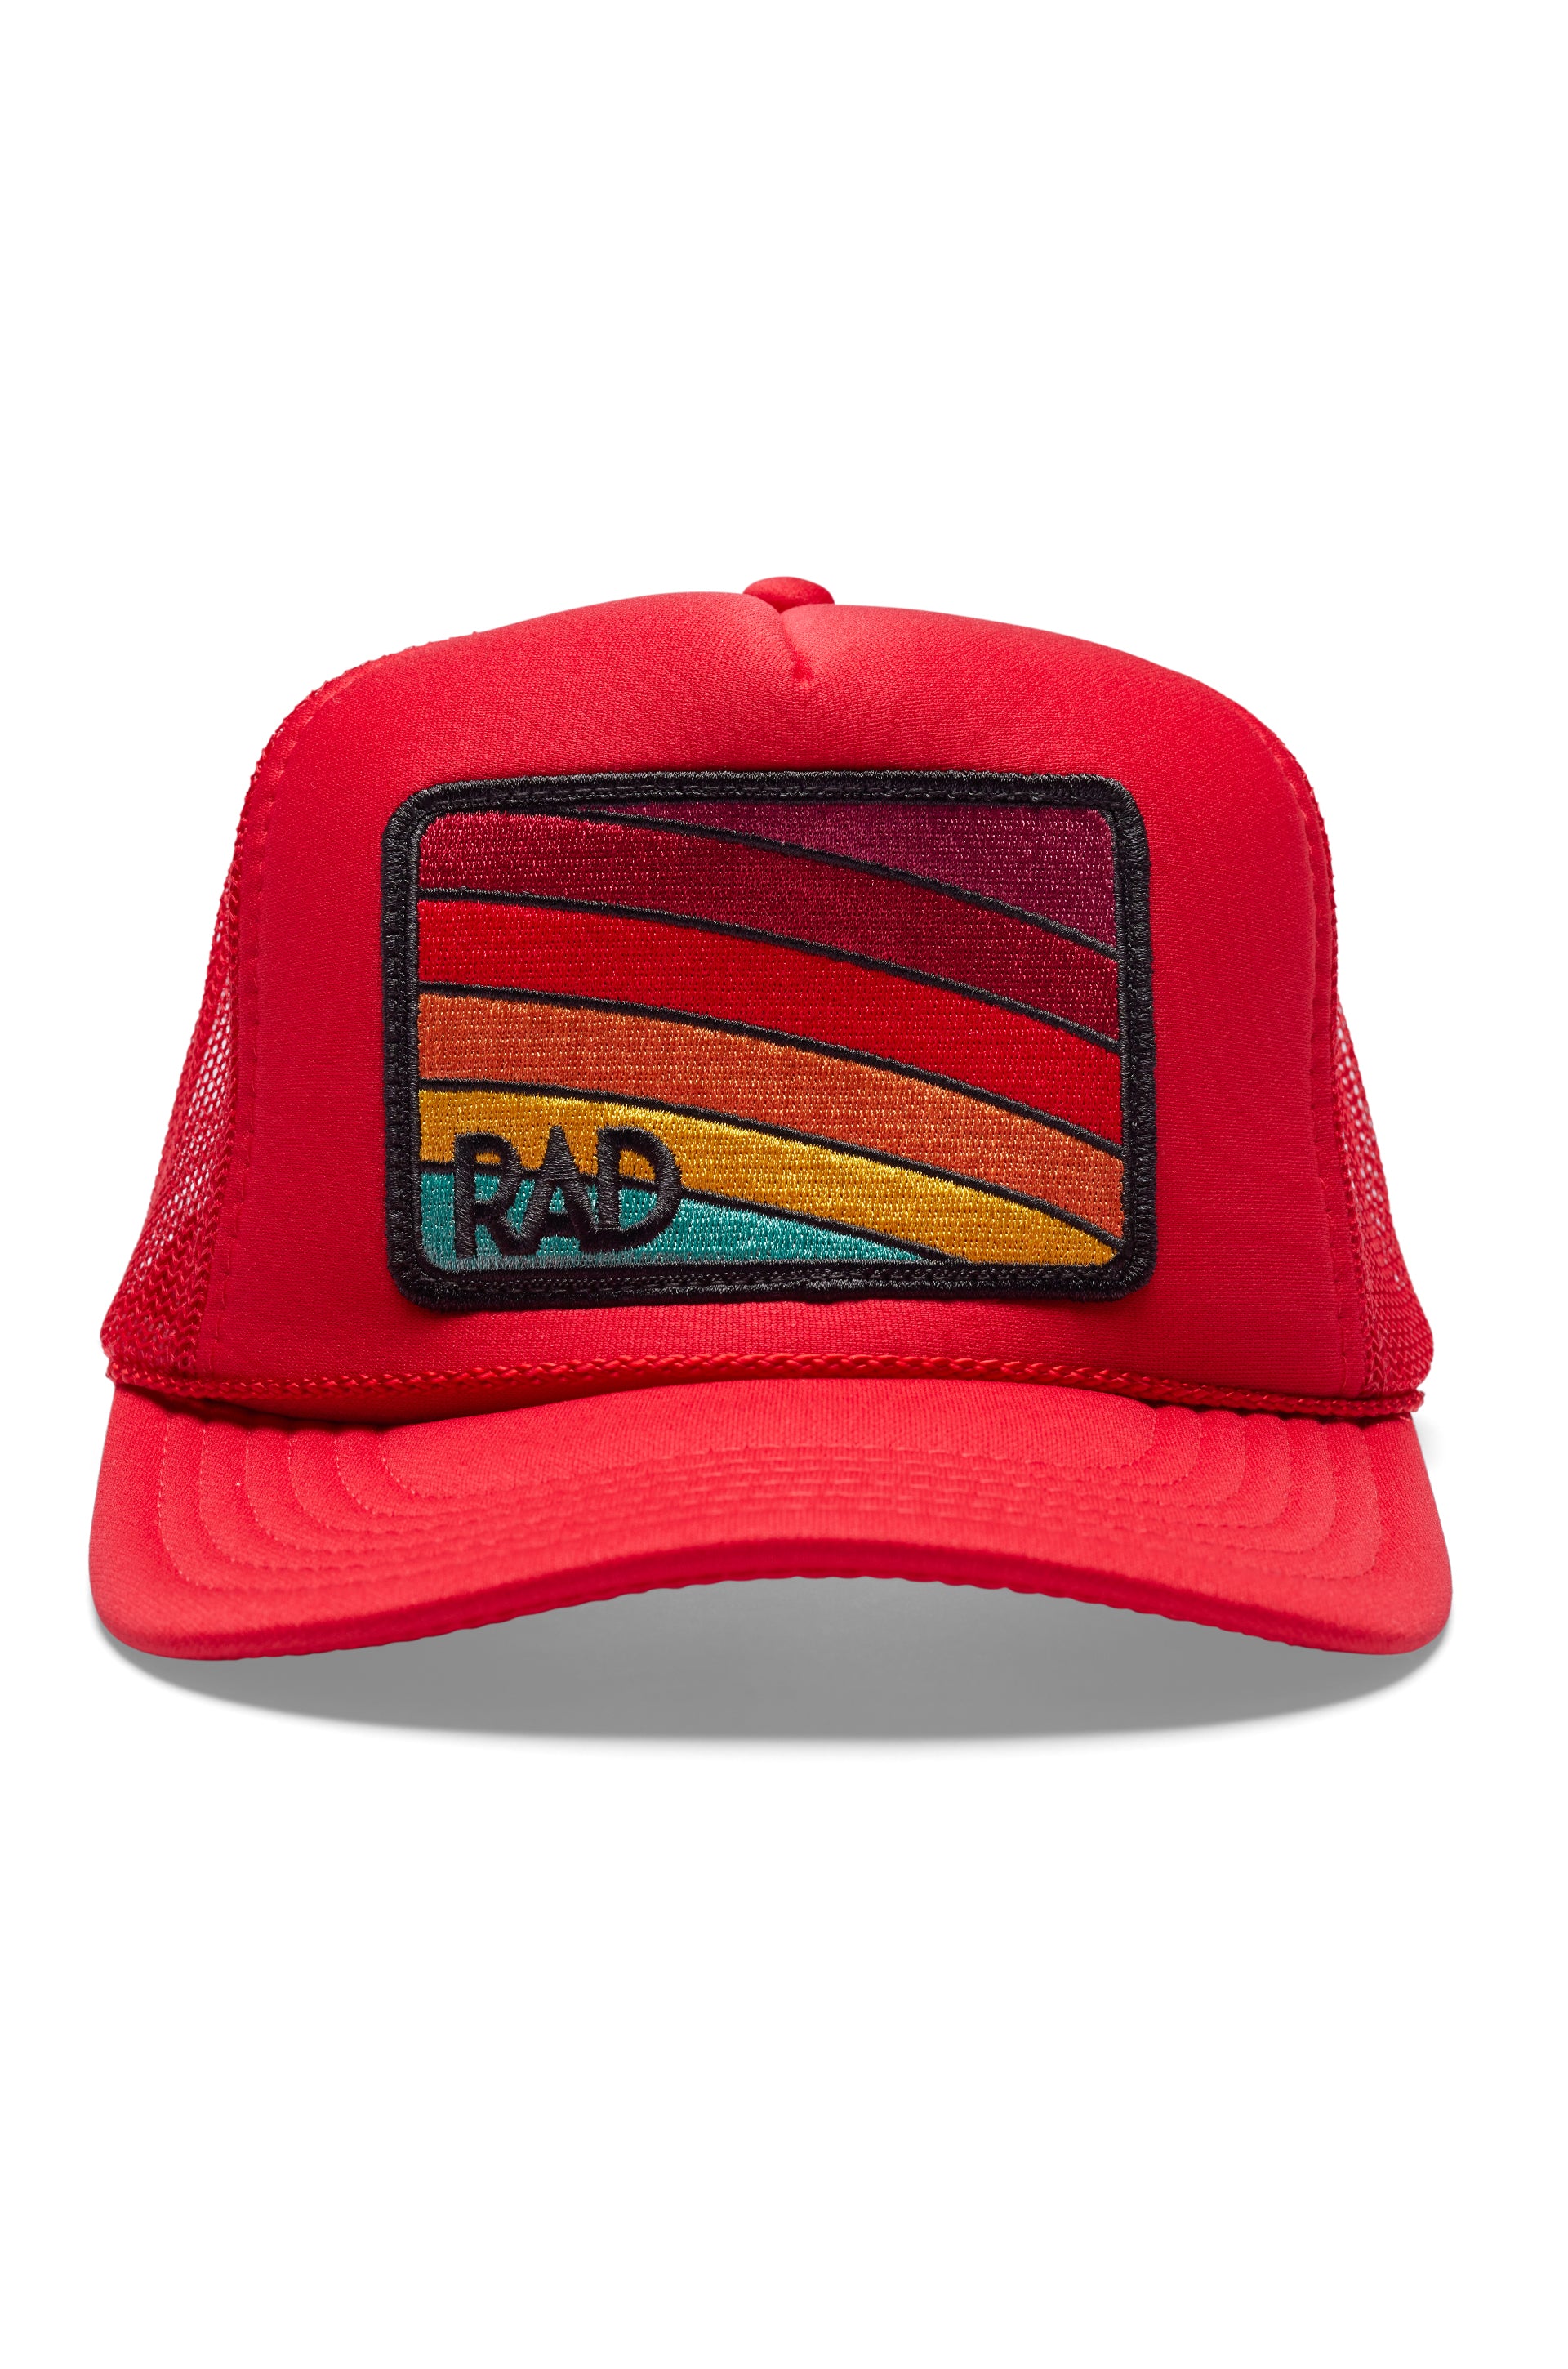 Jabari Man Red Trucker Hat